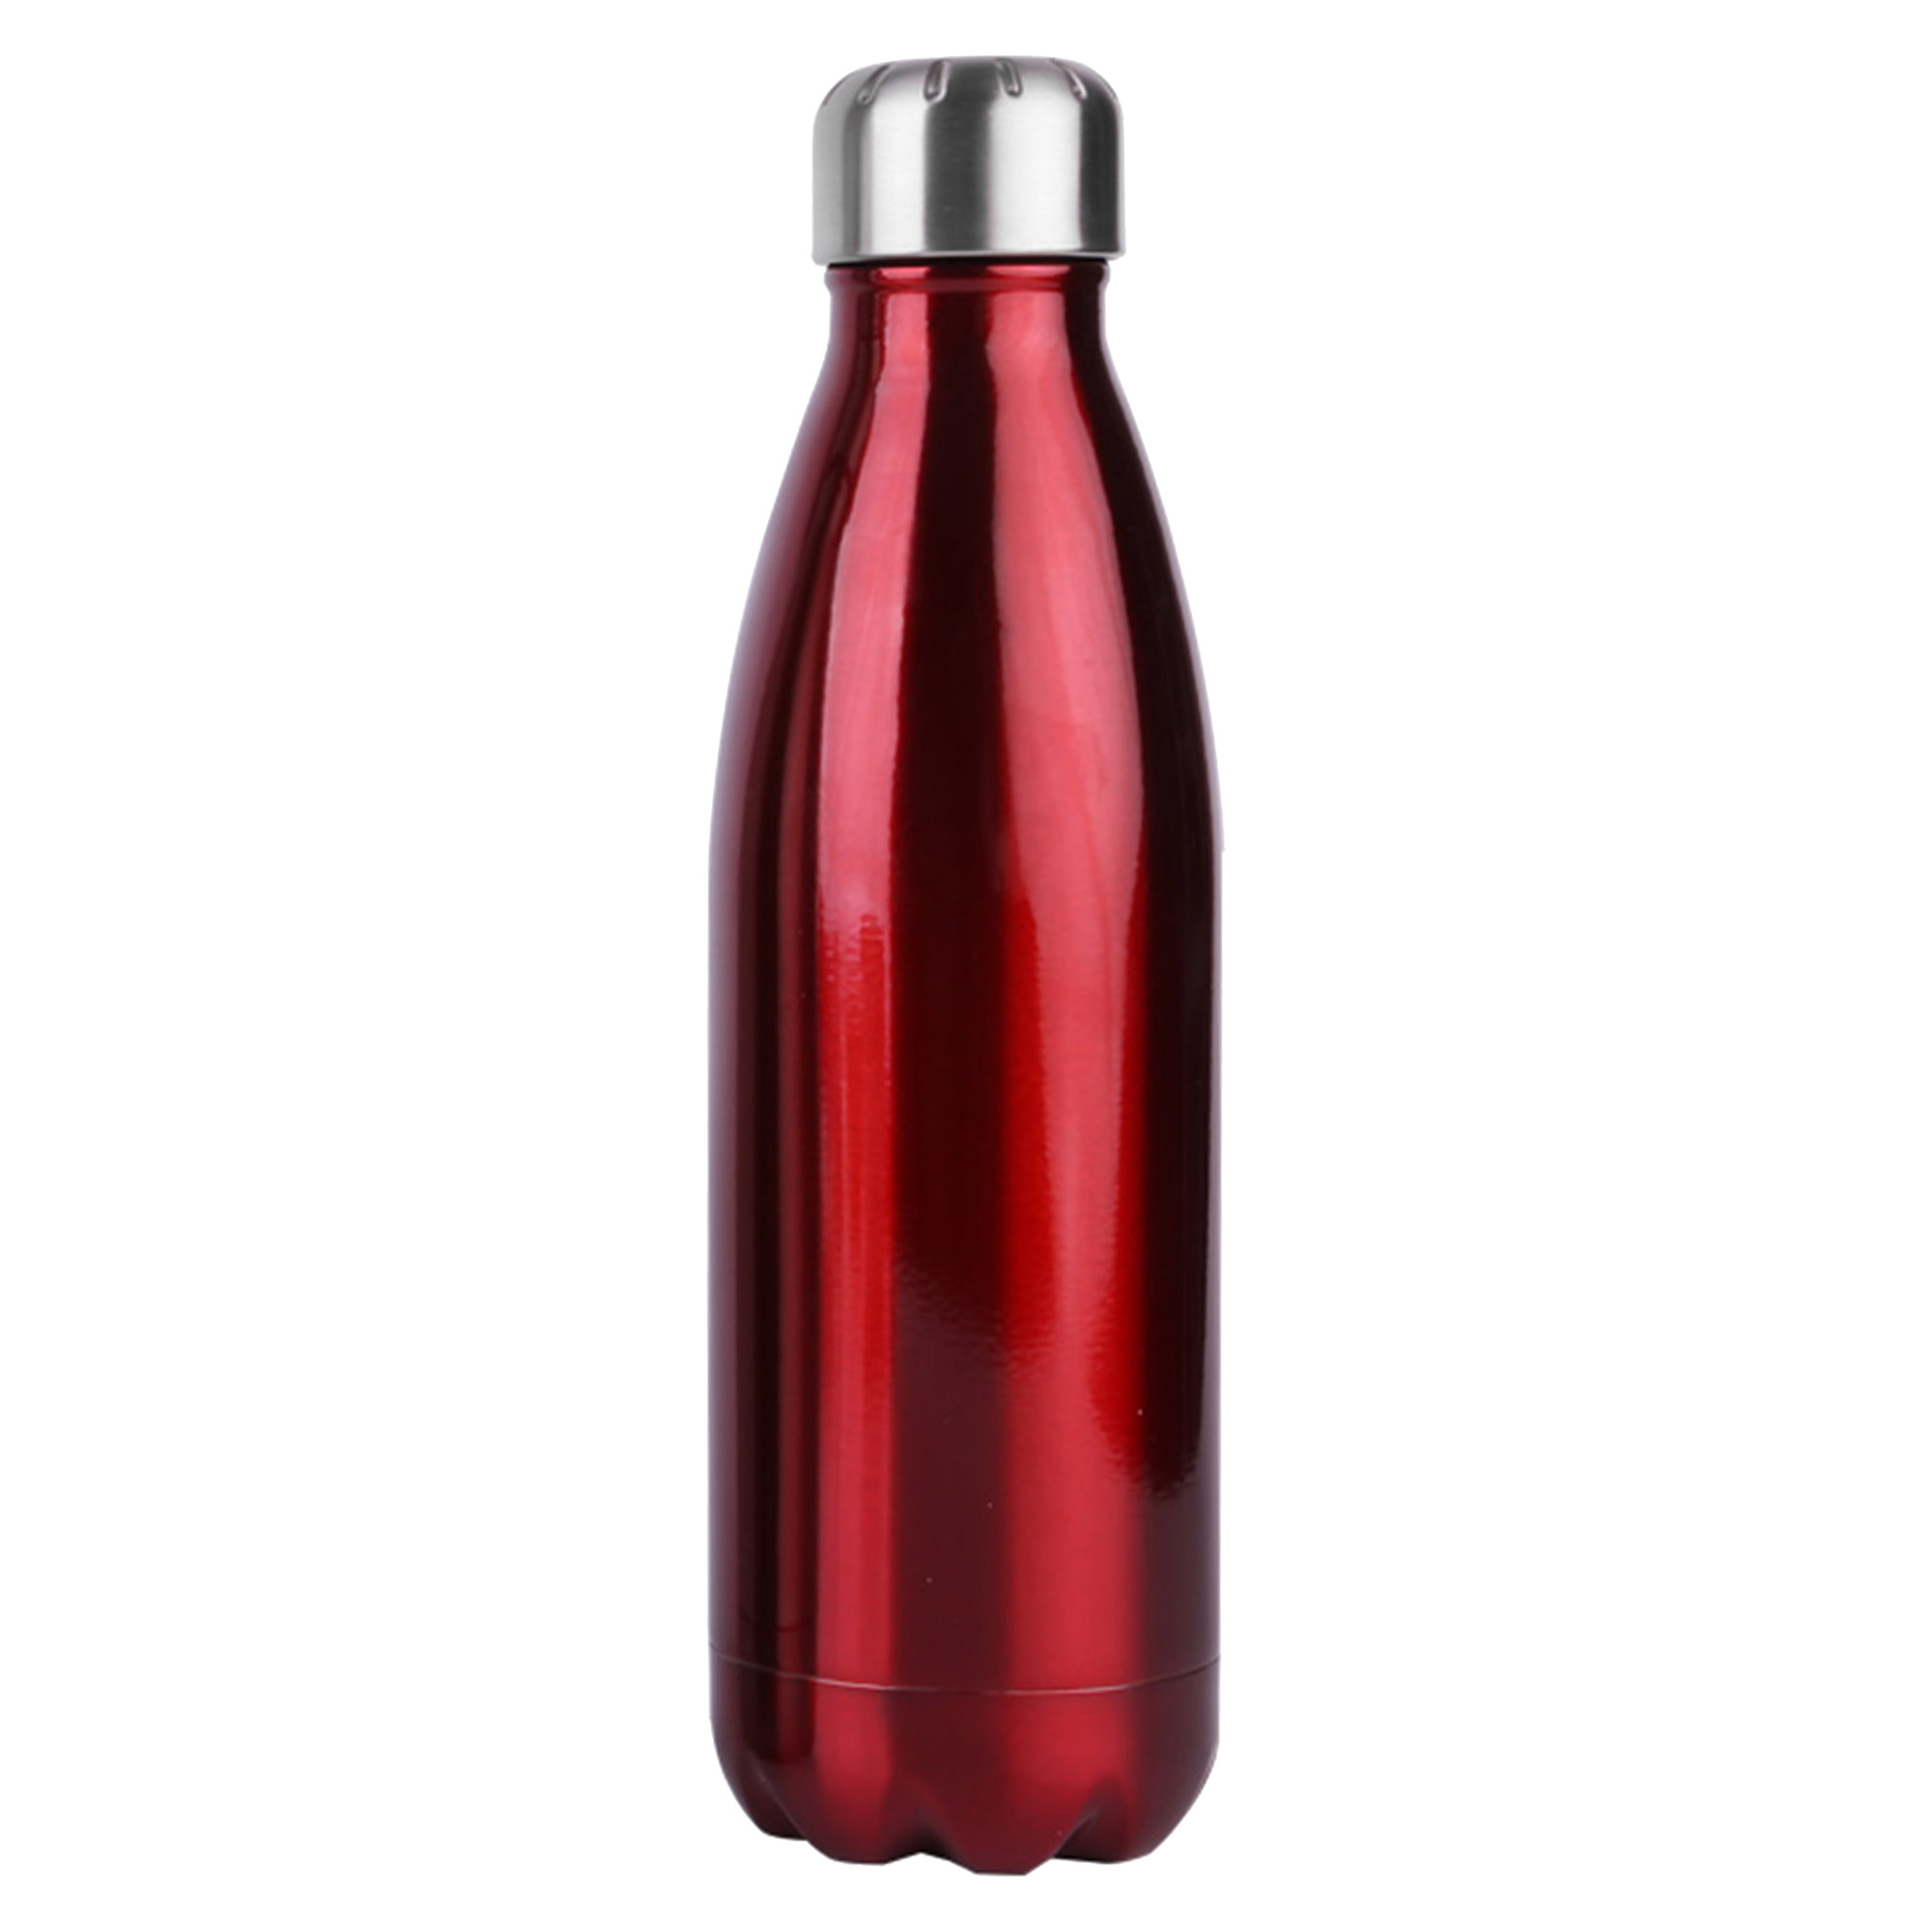 Bulk Personalised Komo Metal Red Drink Bottle Online in Perth Australia